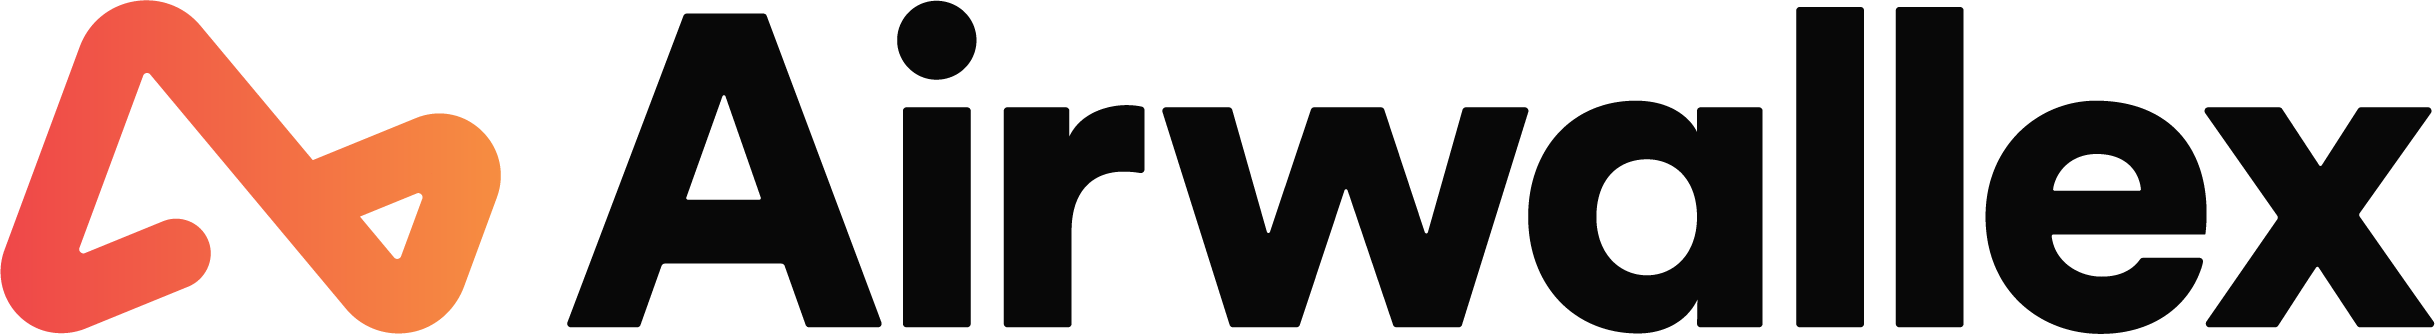 airwallex logo